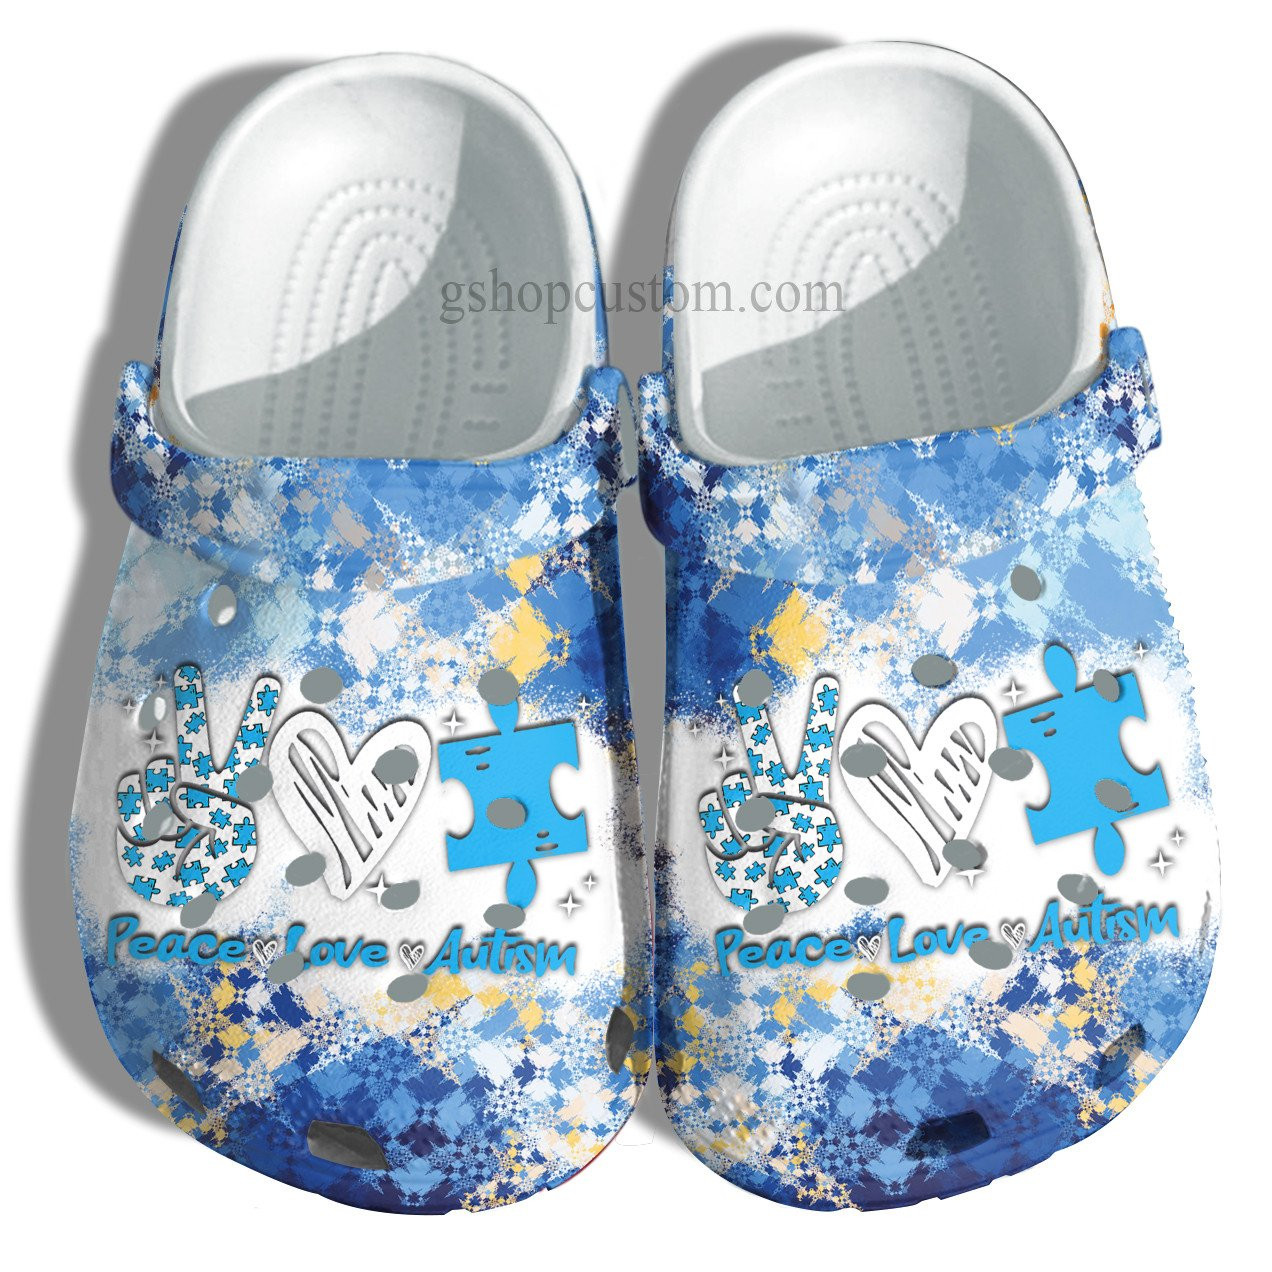 April Wear Blue Crocs Shoes – Peace Love Autism Awareness Shoes Croc Clogs Gifts Men Women